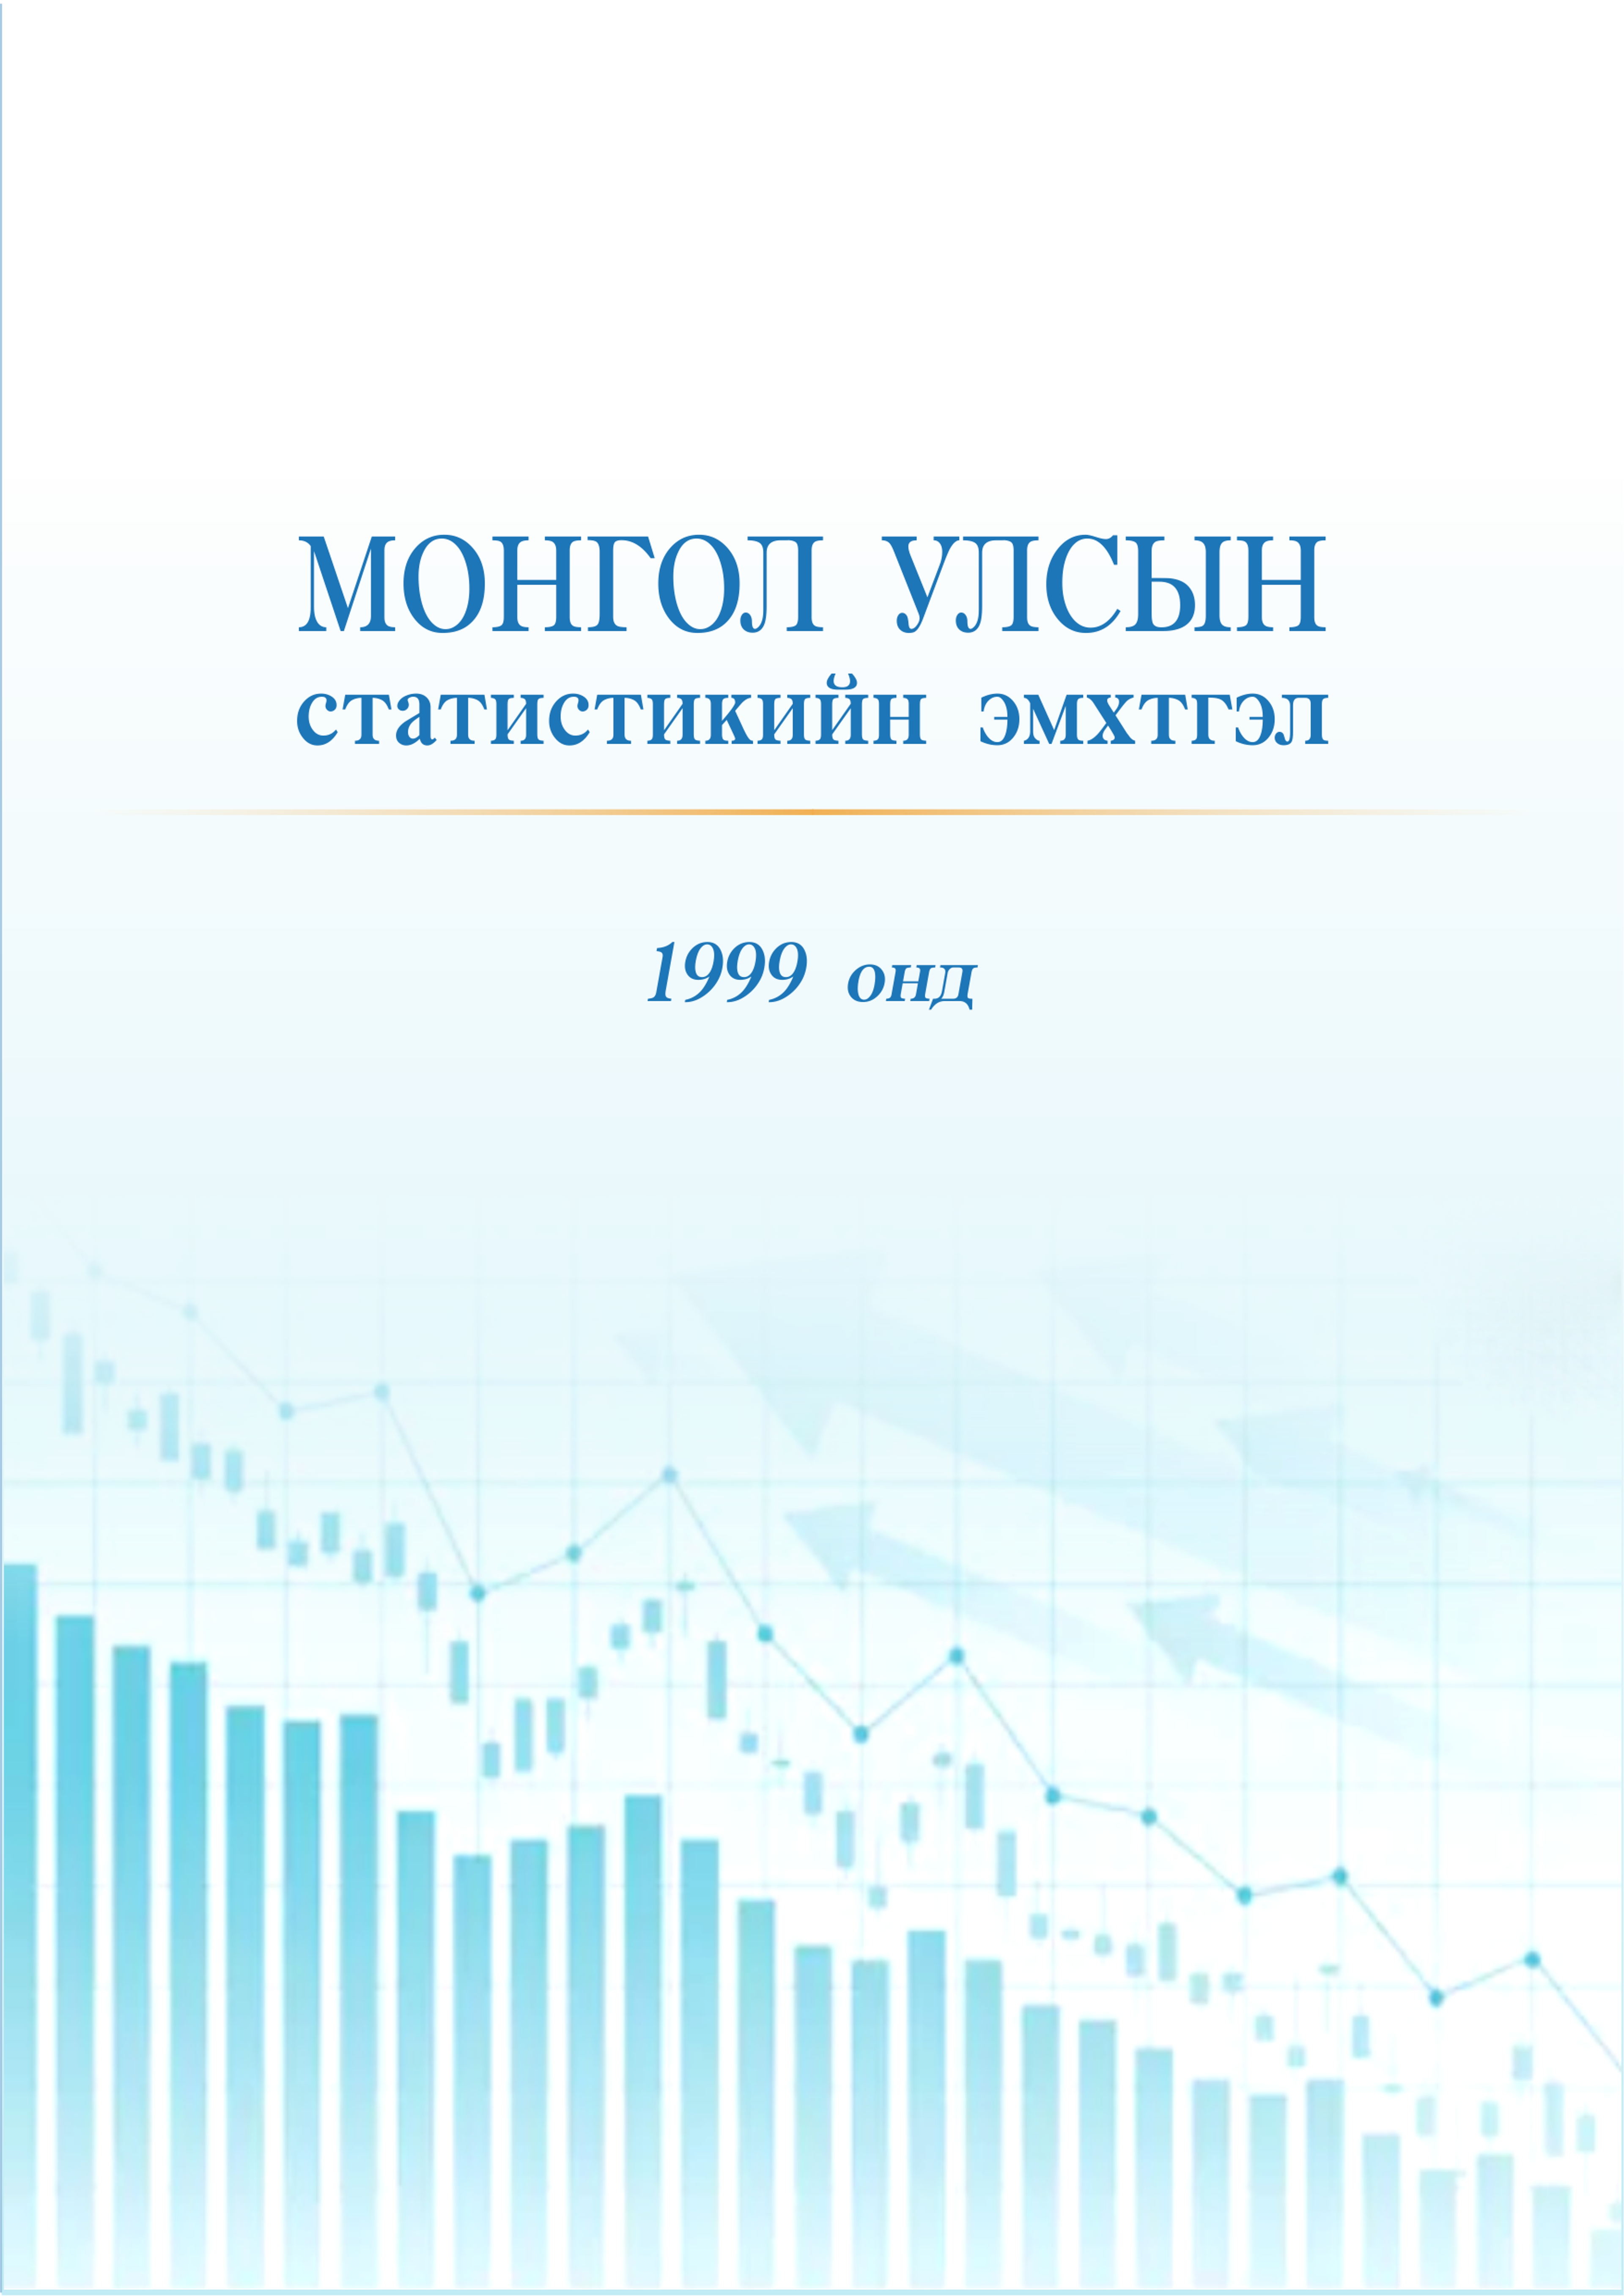 Монгол улсын статистикийн эмхтгэл 1999 онд